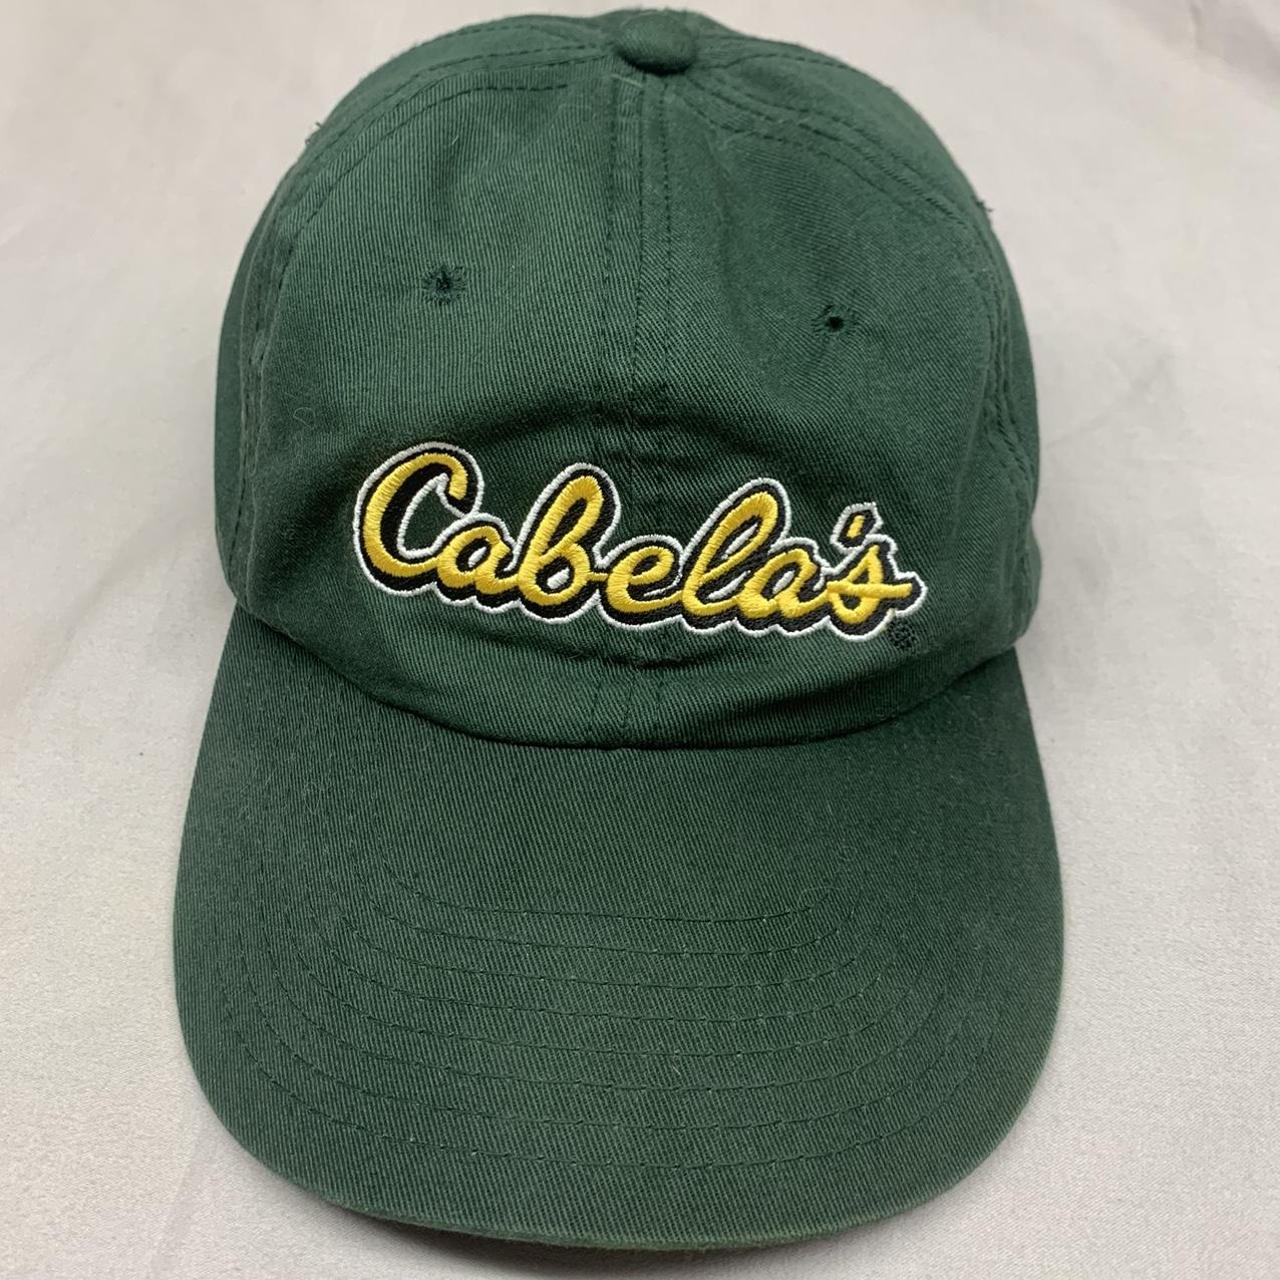 Green Cabela's Hat Size- Adjustable Strap ... - Depop